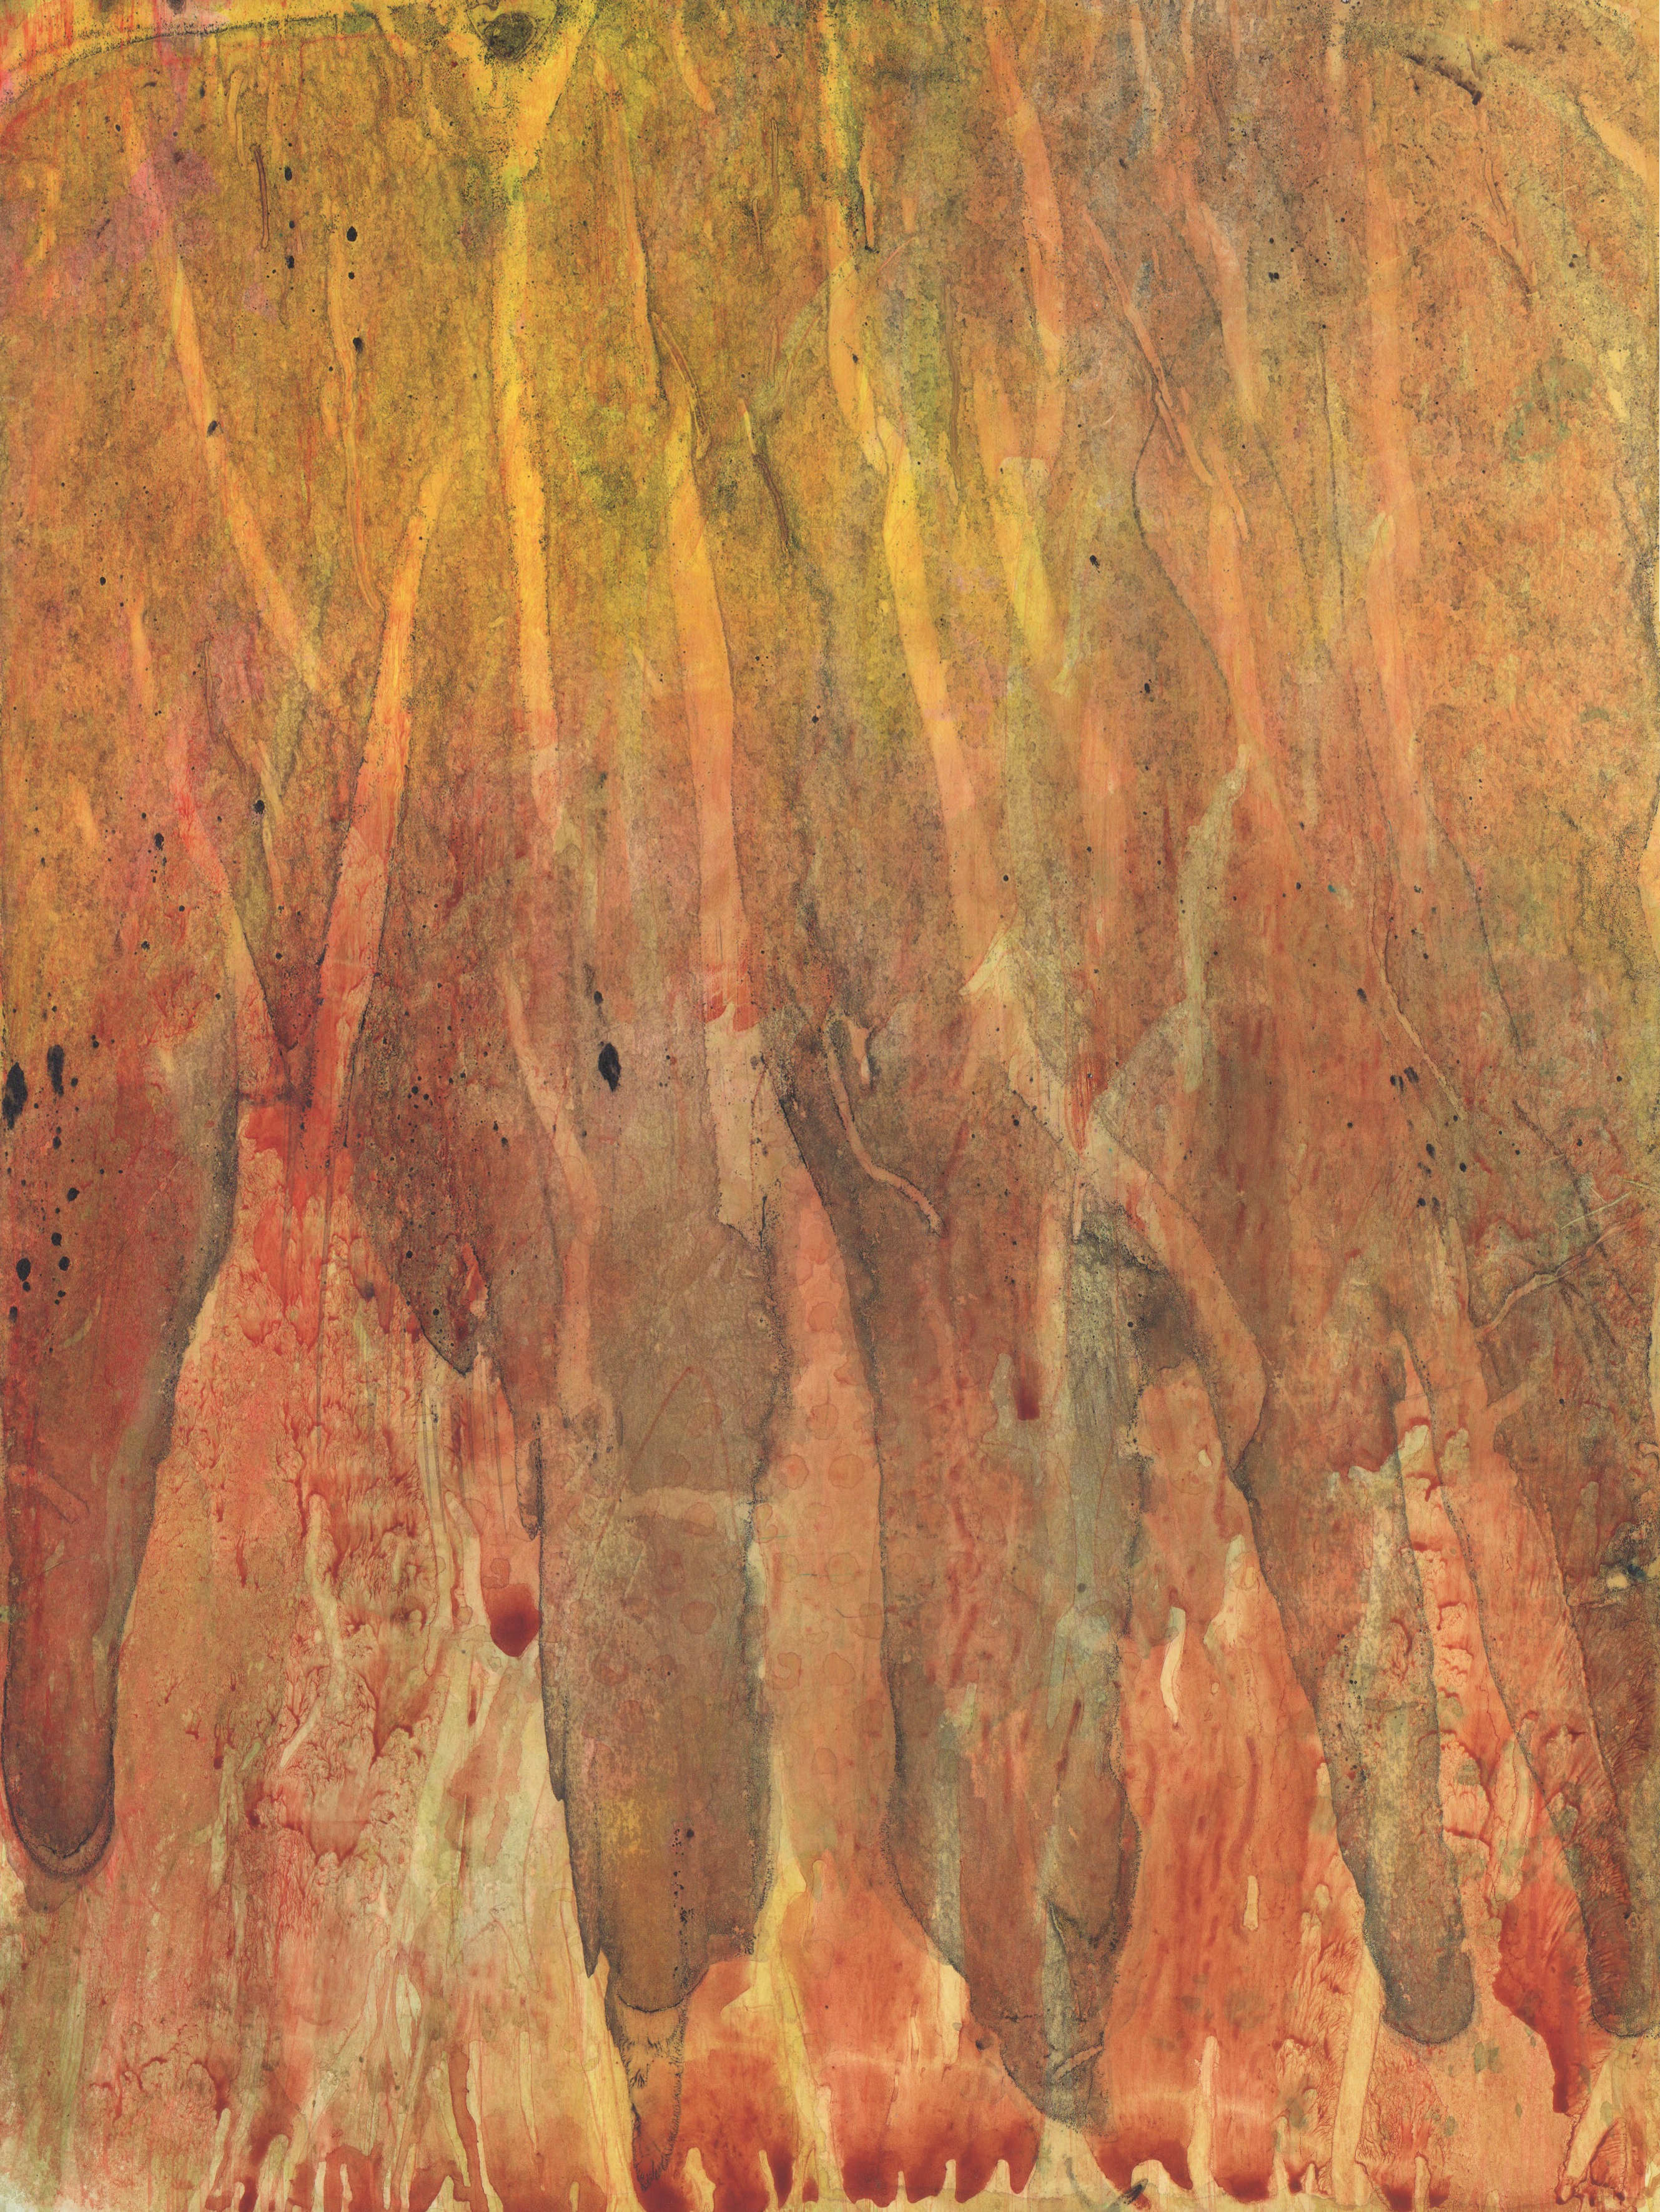 Watercolor of subterranean flames